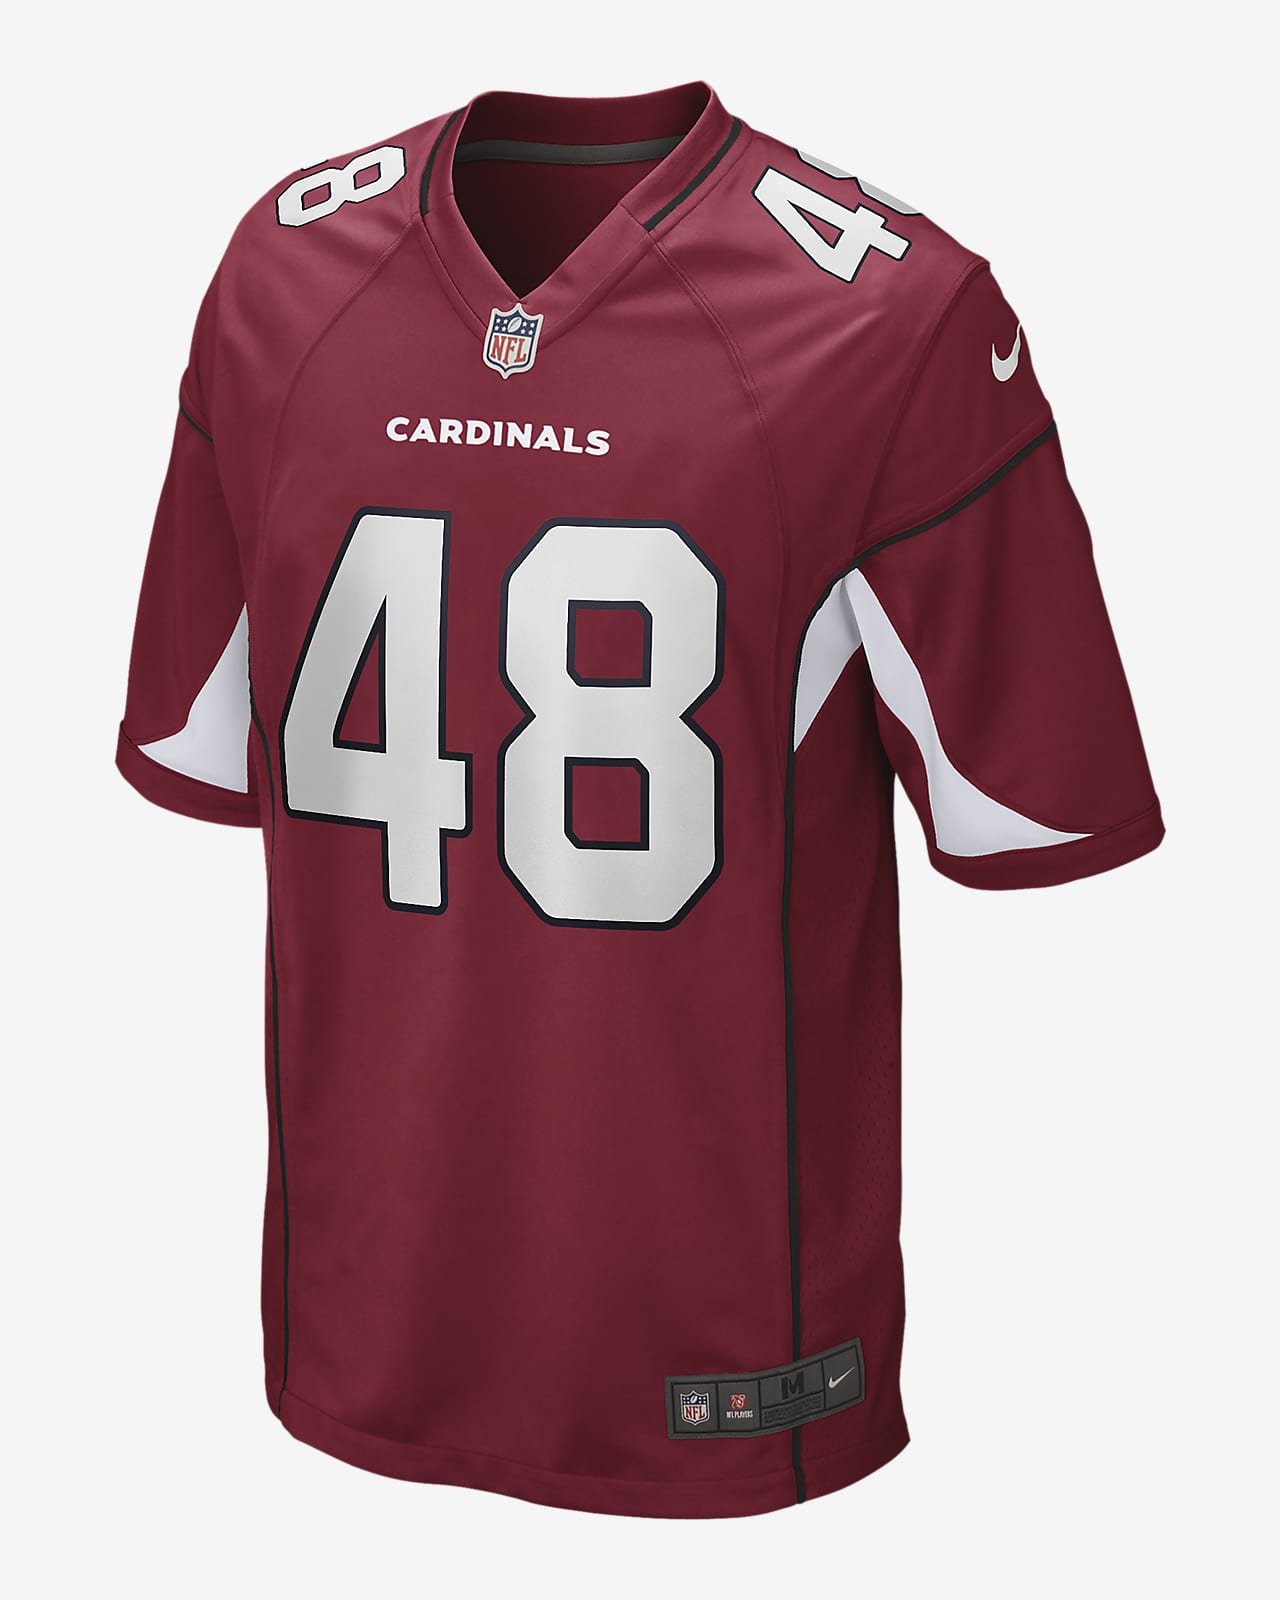 NFL Arizona Cardinals (Isaiah Simmons) Men's Game Football Jersey.